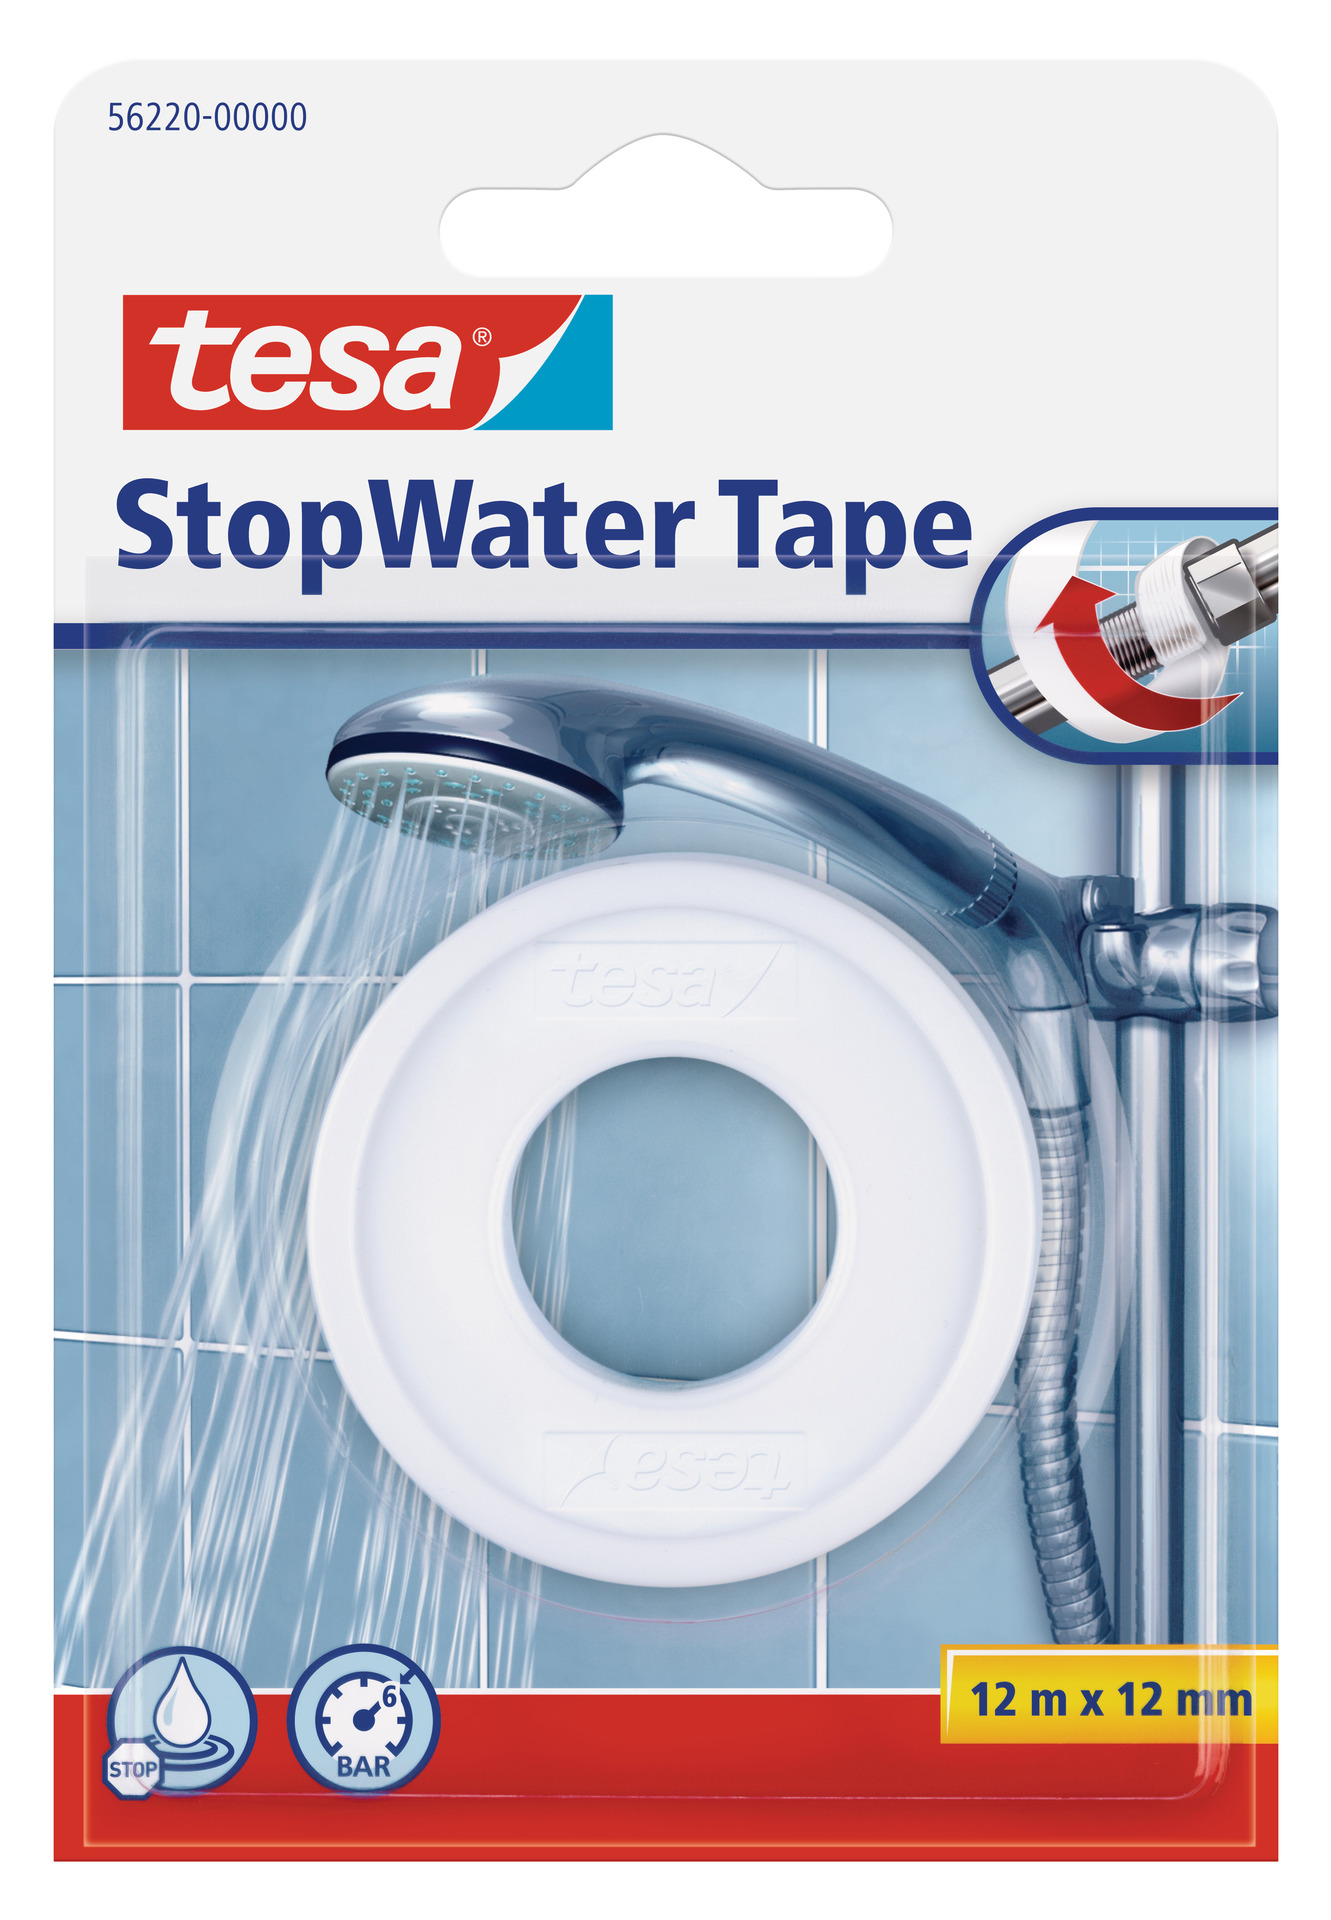 Tesa StopWater Tape